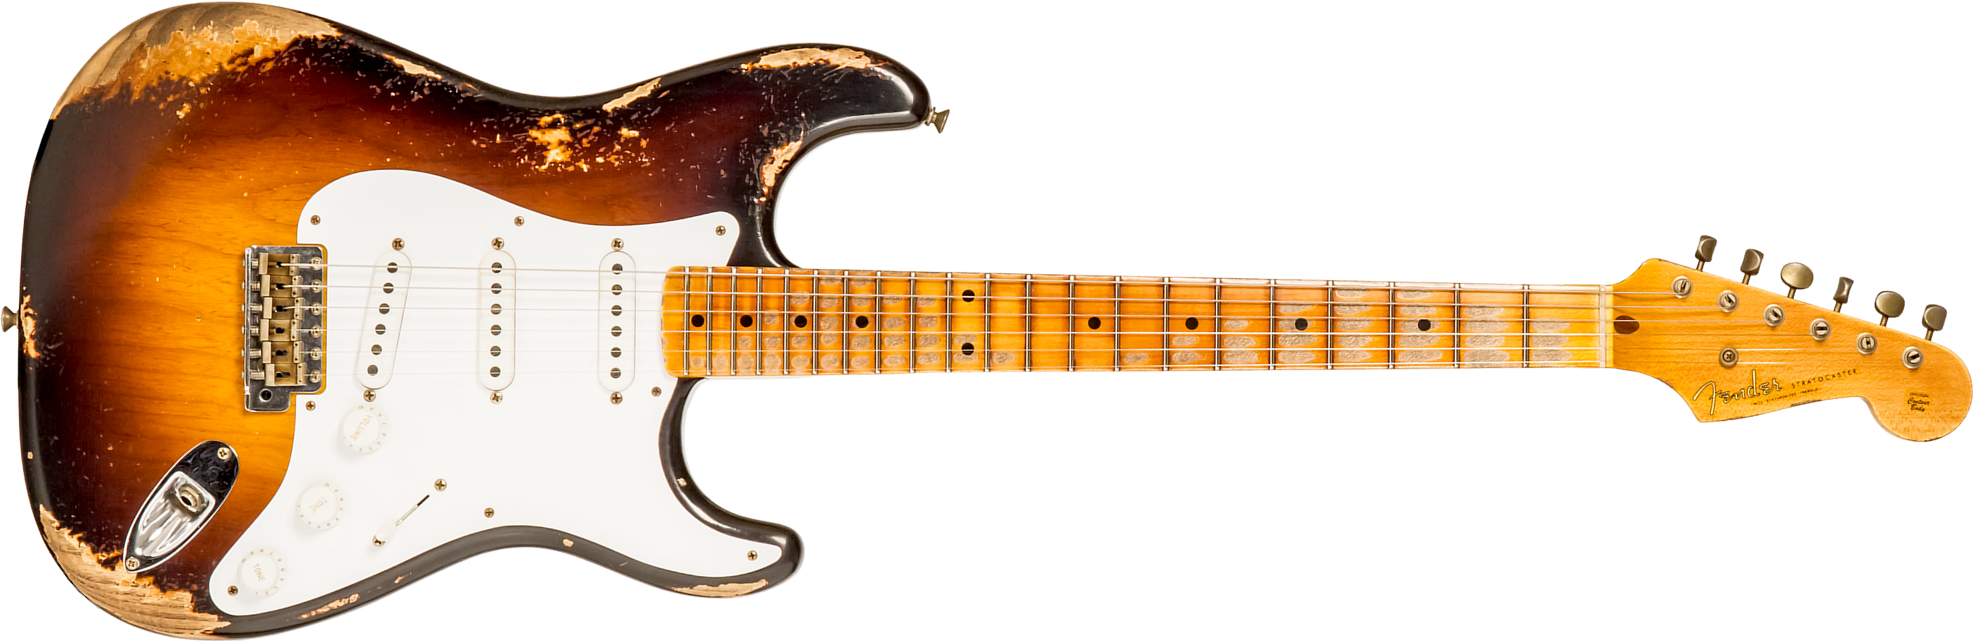 Fender Custom Shop Strat 1954 70th Anniv. 3s Trem Mn #xn4324 - Heavy Relic Wide Fade 2-color Sunburst - E-Gitarre in Str-Form - Main picture